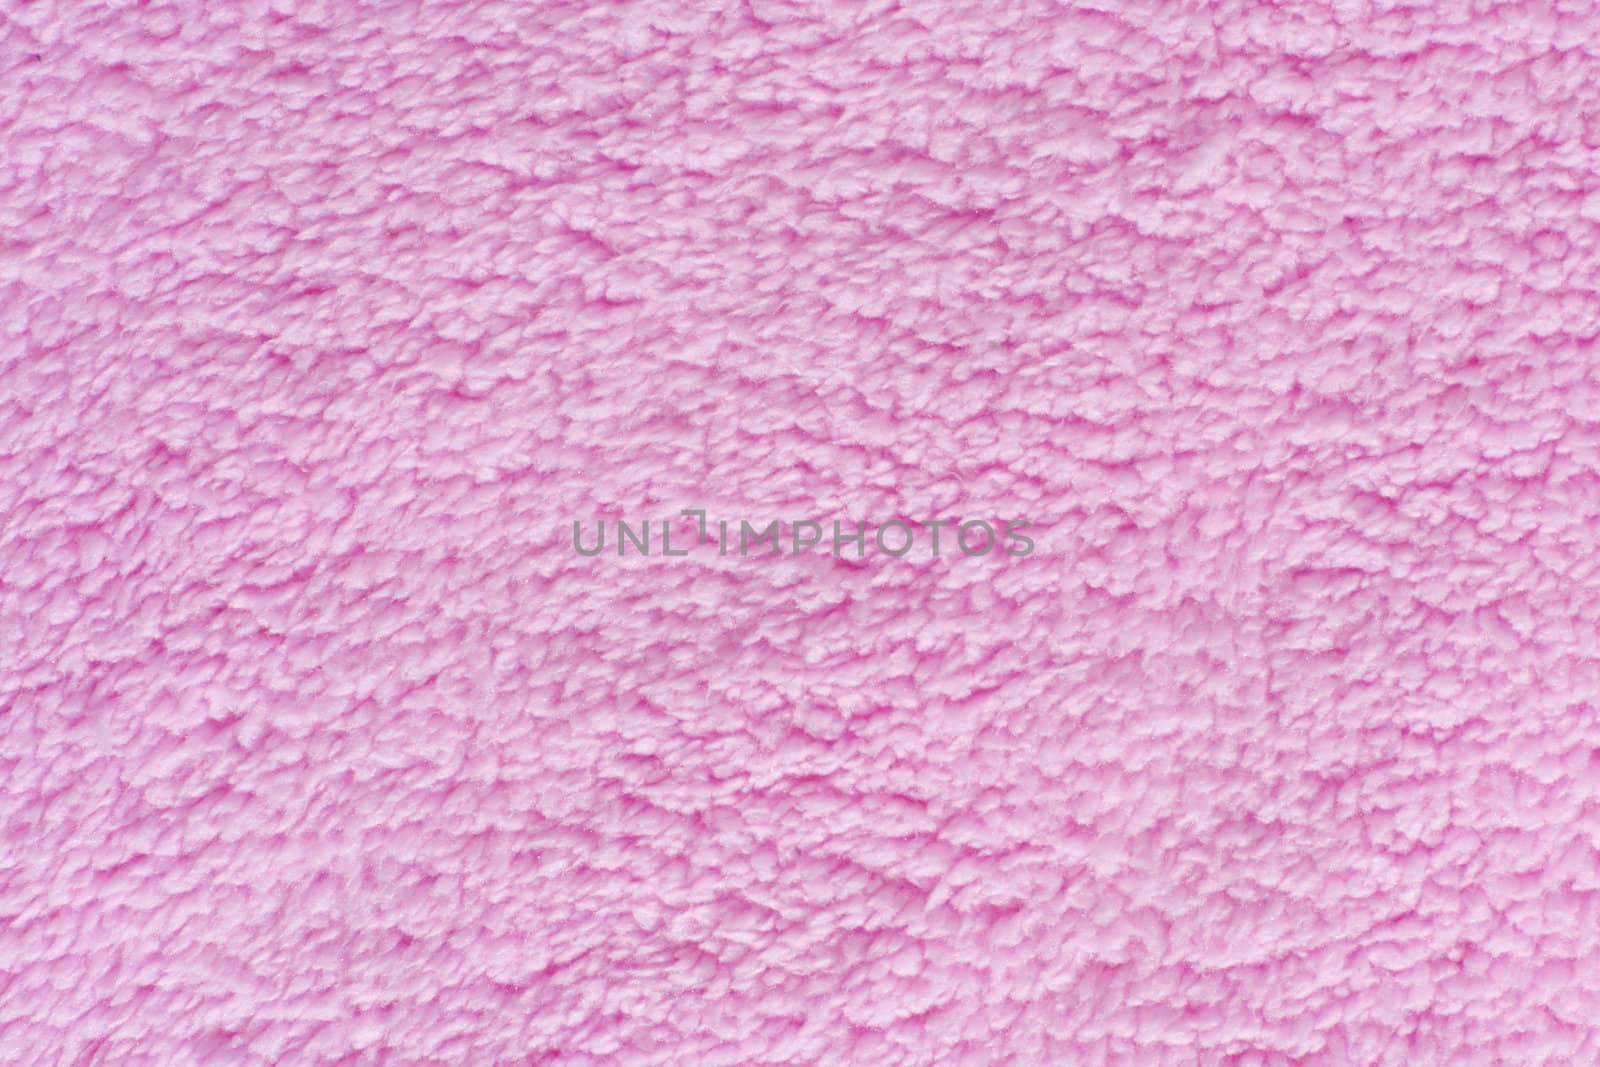 textile texture close-up